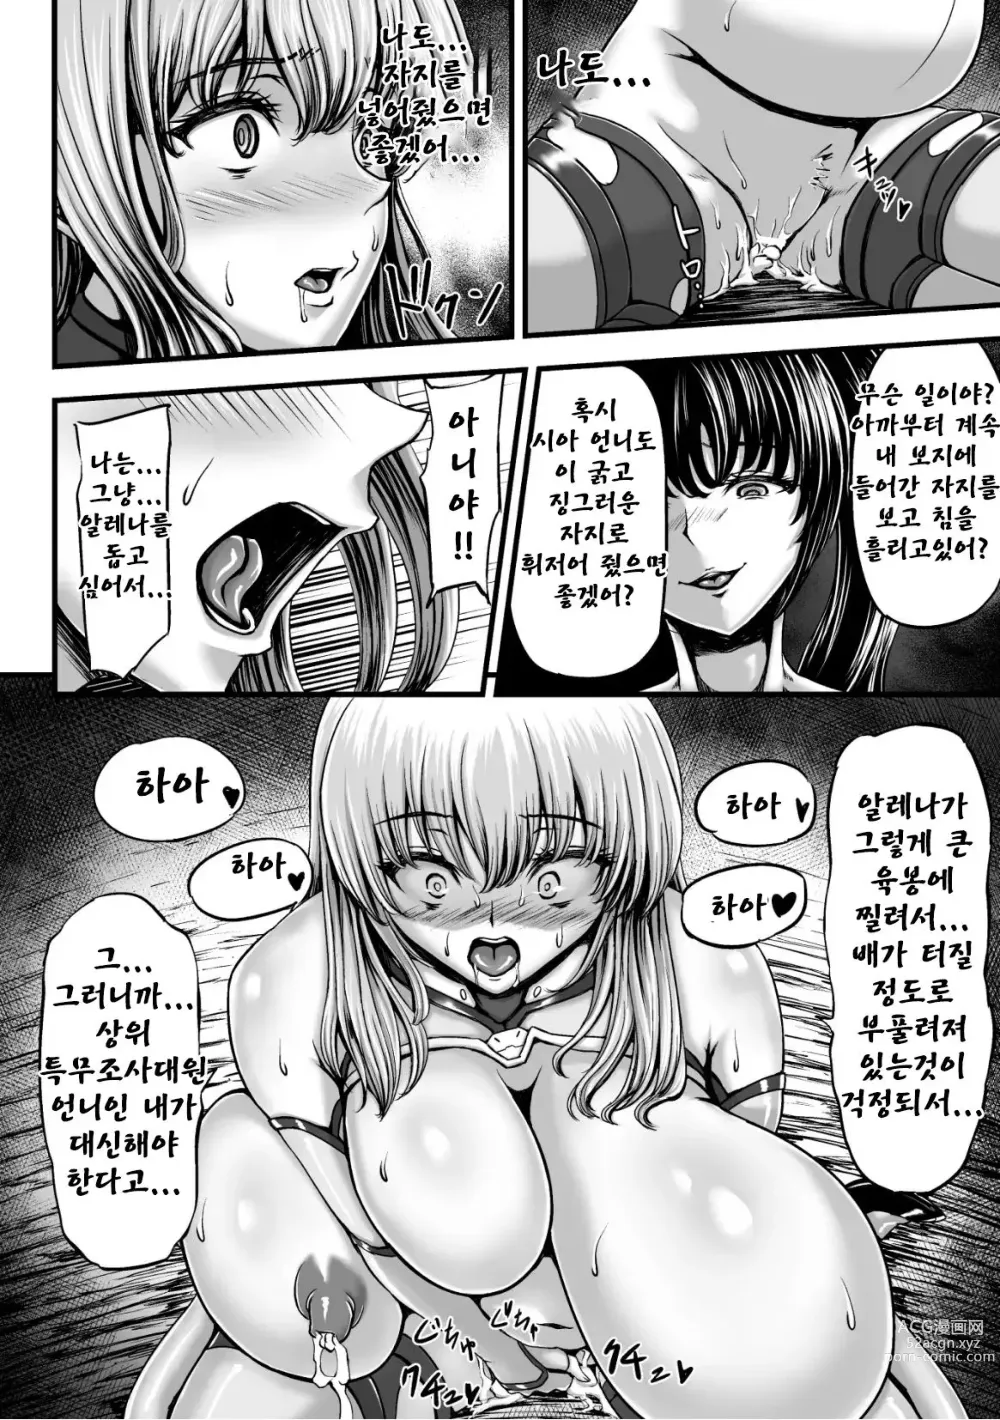 Page 29 of manga Kangoku Tentacle Battleship Episode 2